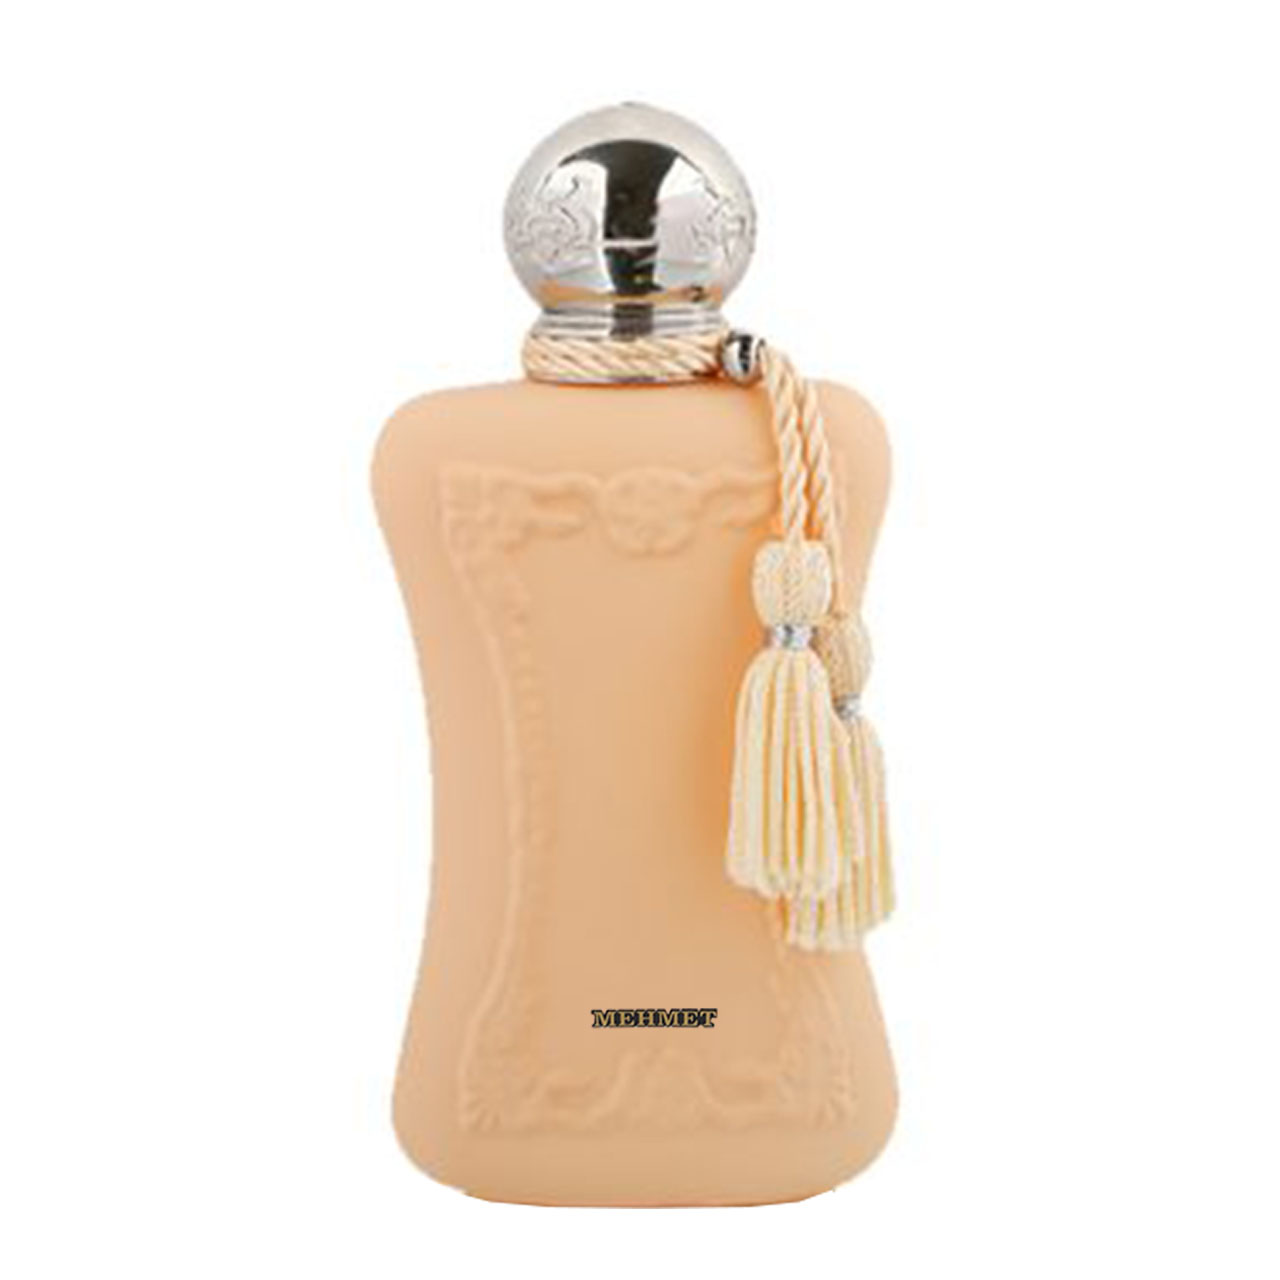 ادو پرفیوم زنانه مهمت مدل Parfums de Marly Cassili حجم 75 میلی لیتر